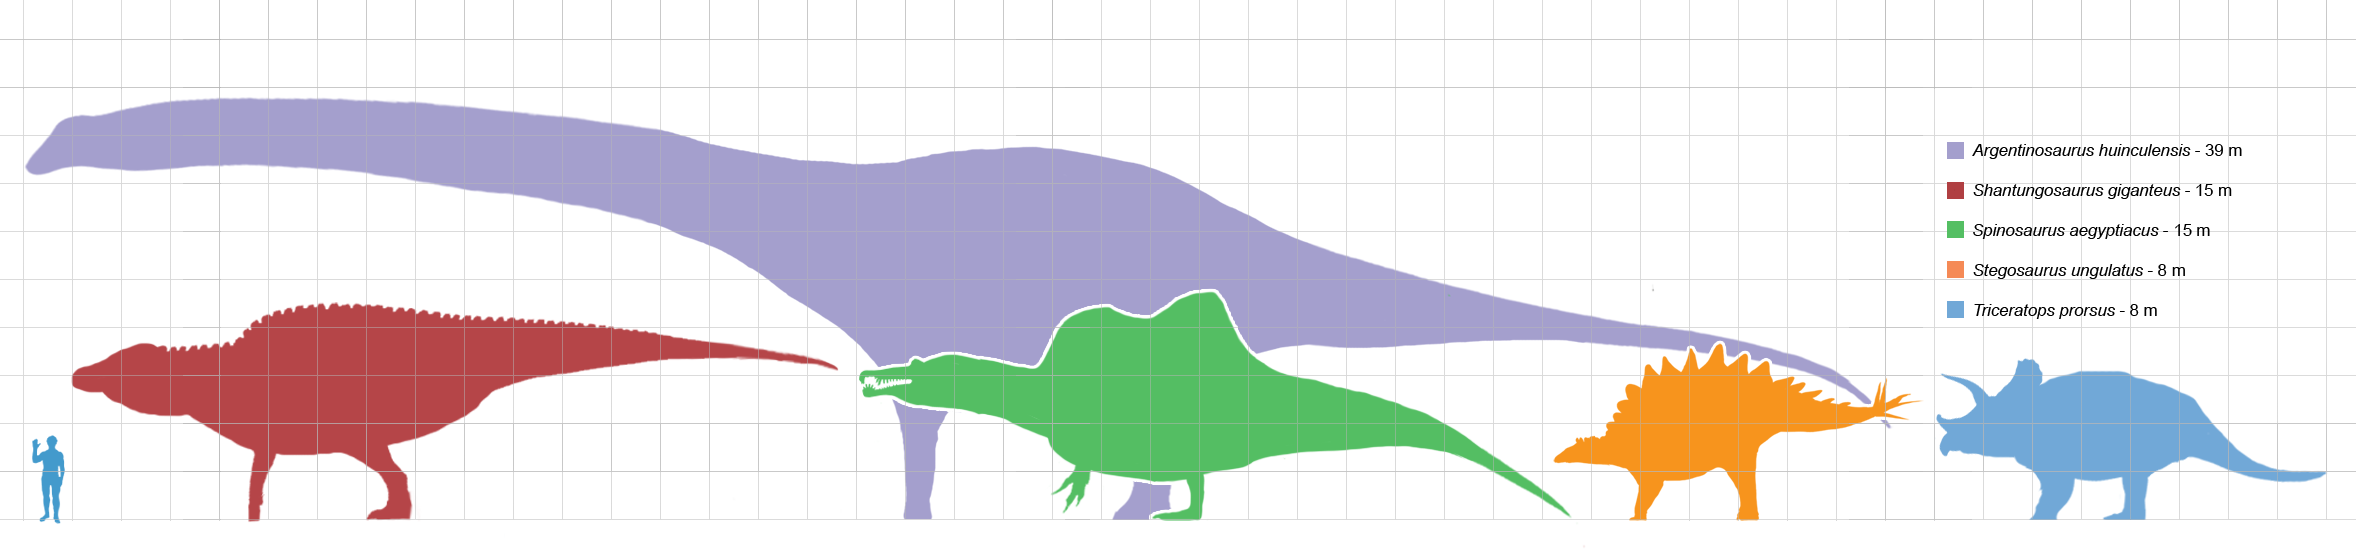 largestdinosaursbysuborder_scale